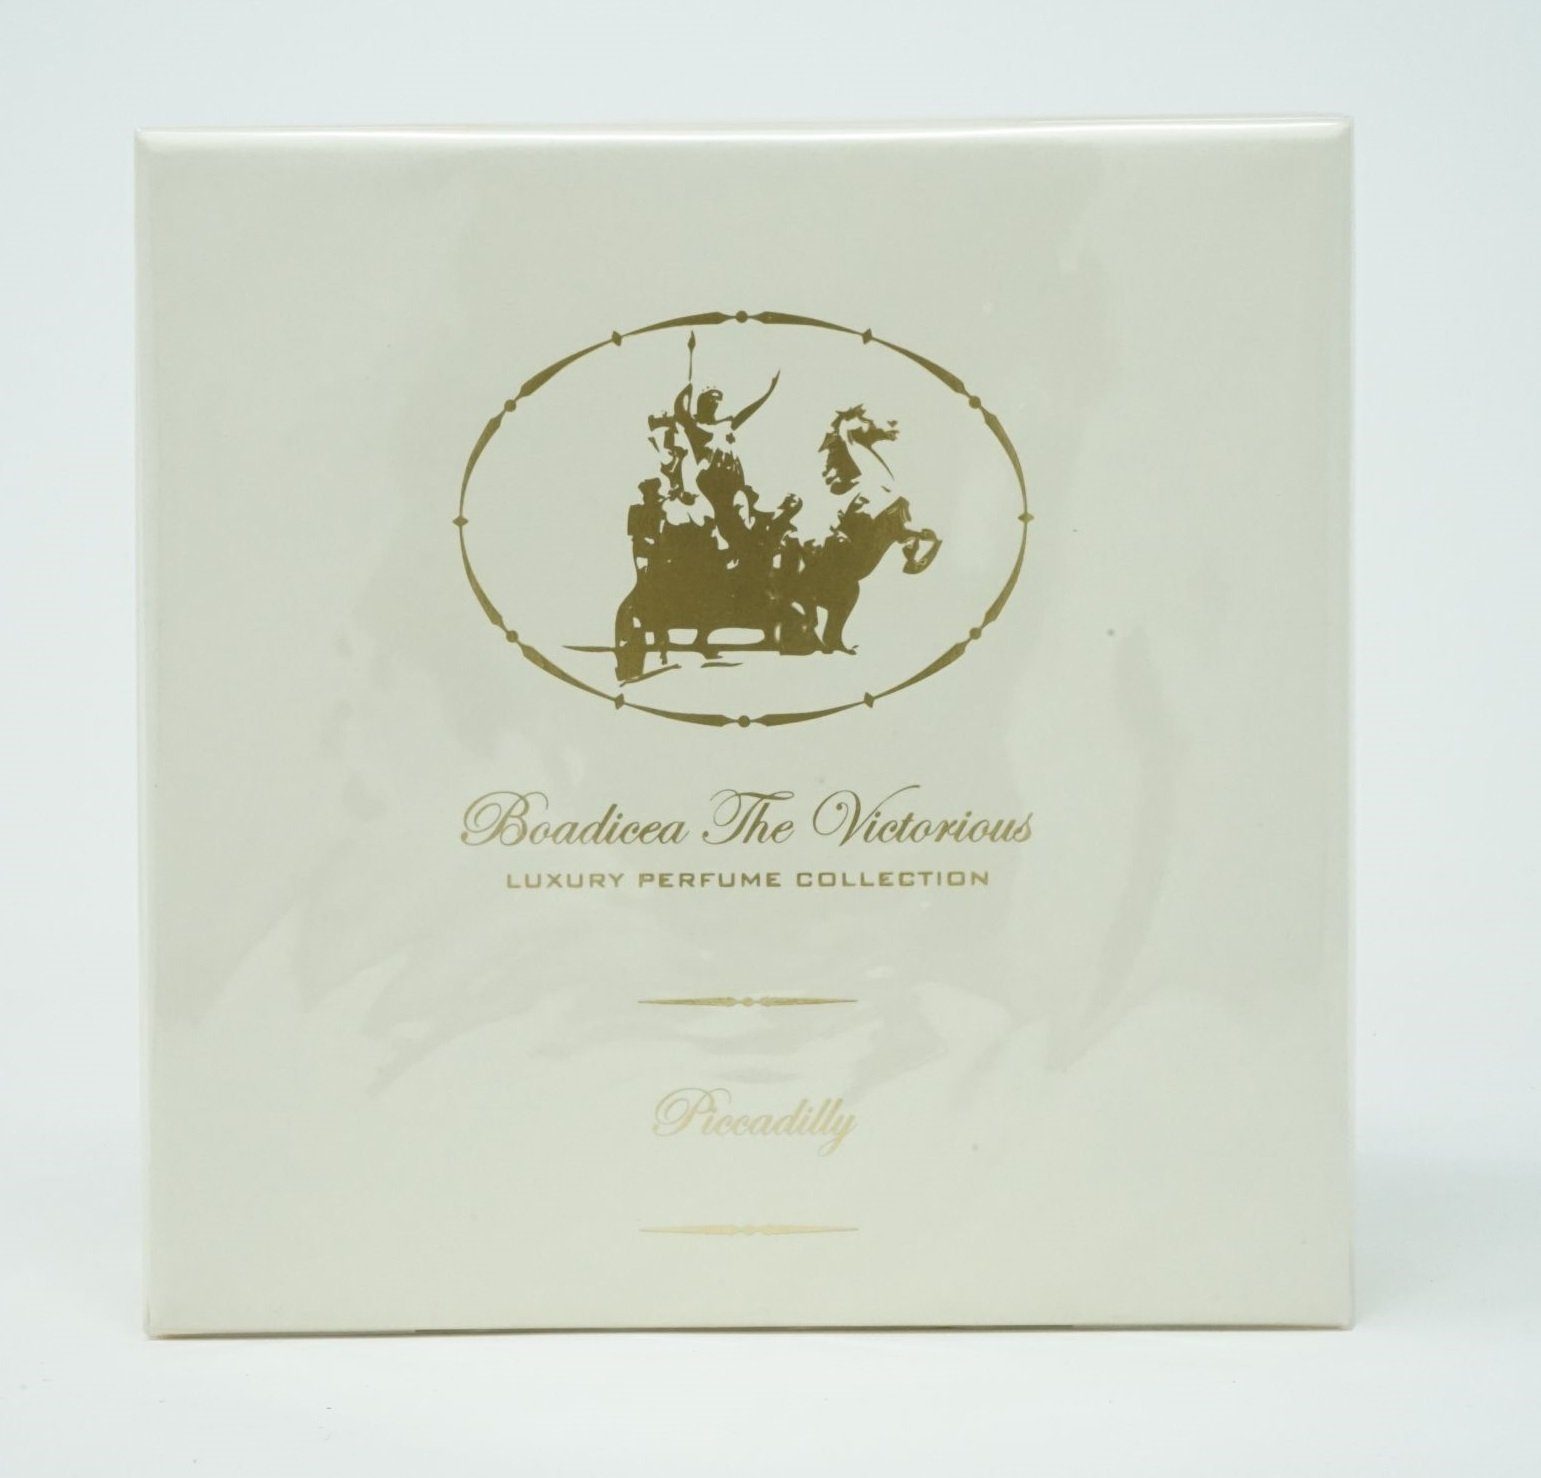 Parfum Parfum de Tiziana Eau Eau de Collection Boadiceau ml Piccadilly Terenzi 100